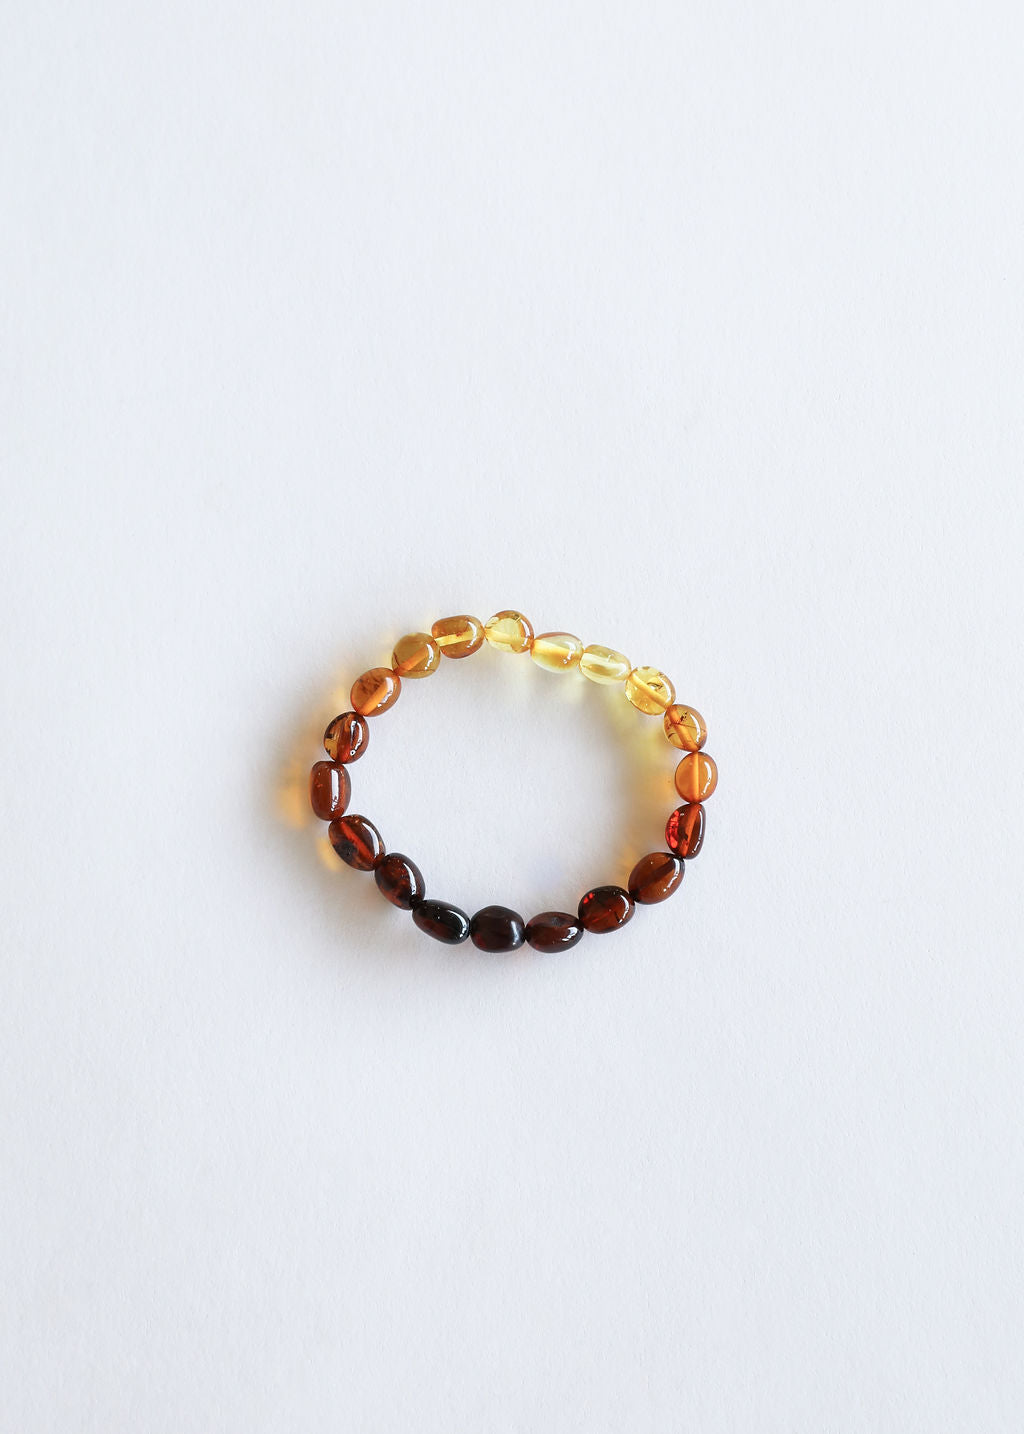 Polished Ombre Baltic Amber Bracelet || Adult